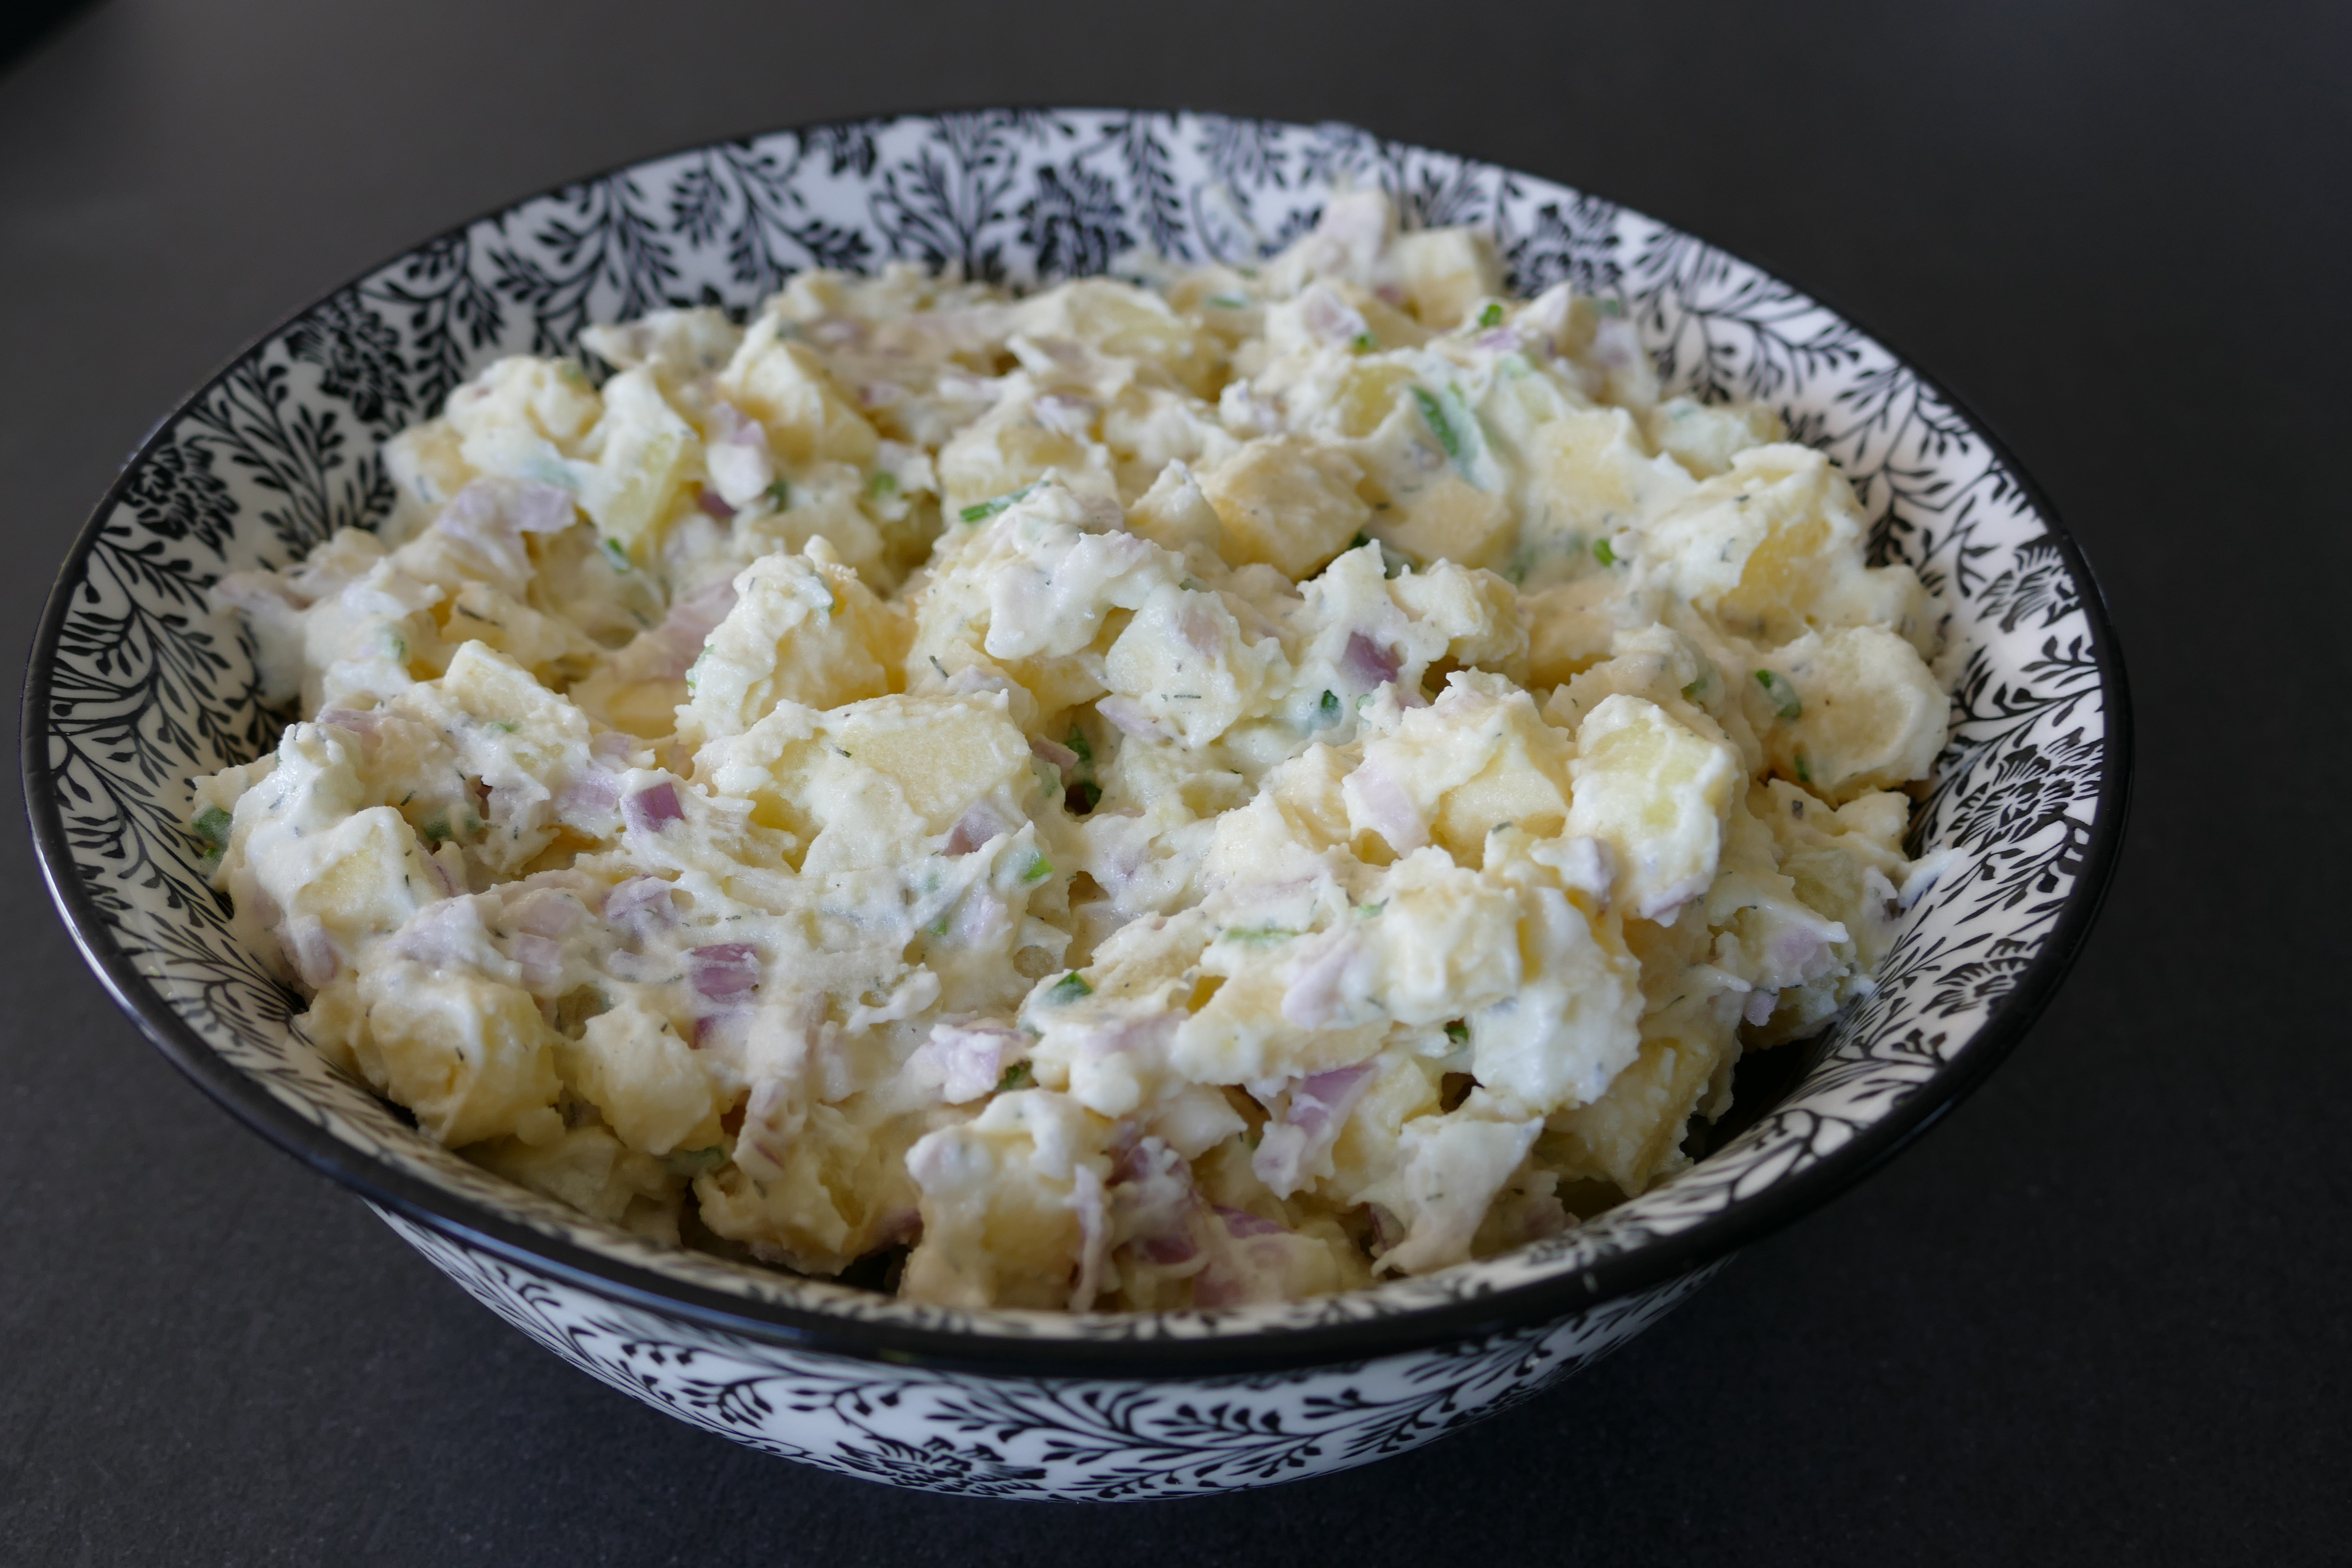 Aardappelsalade met zure room